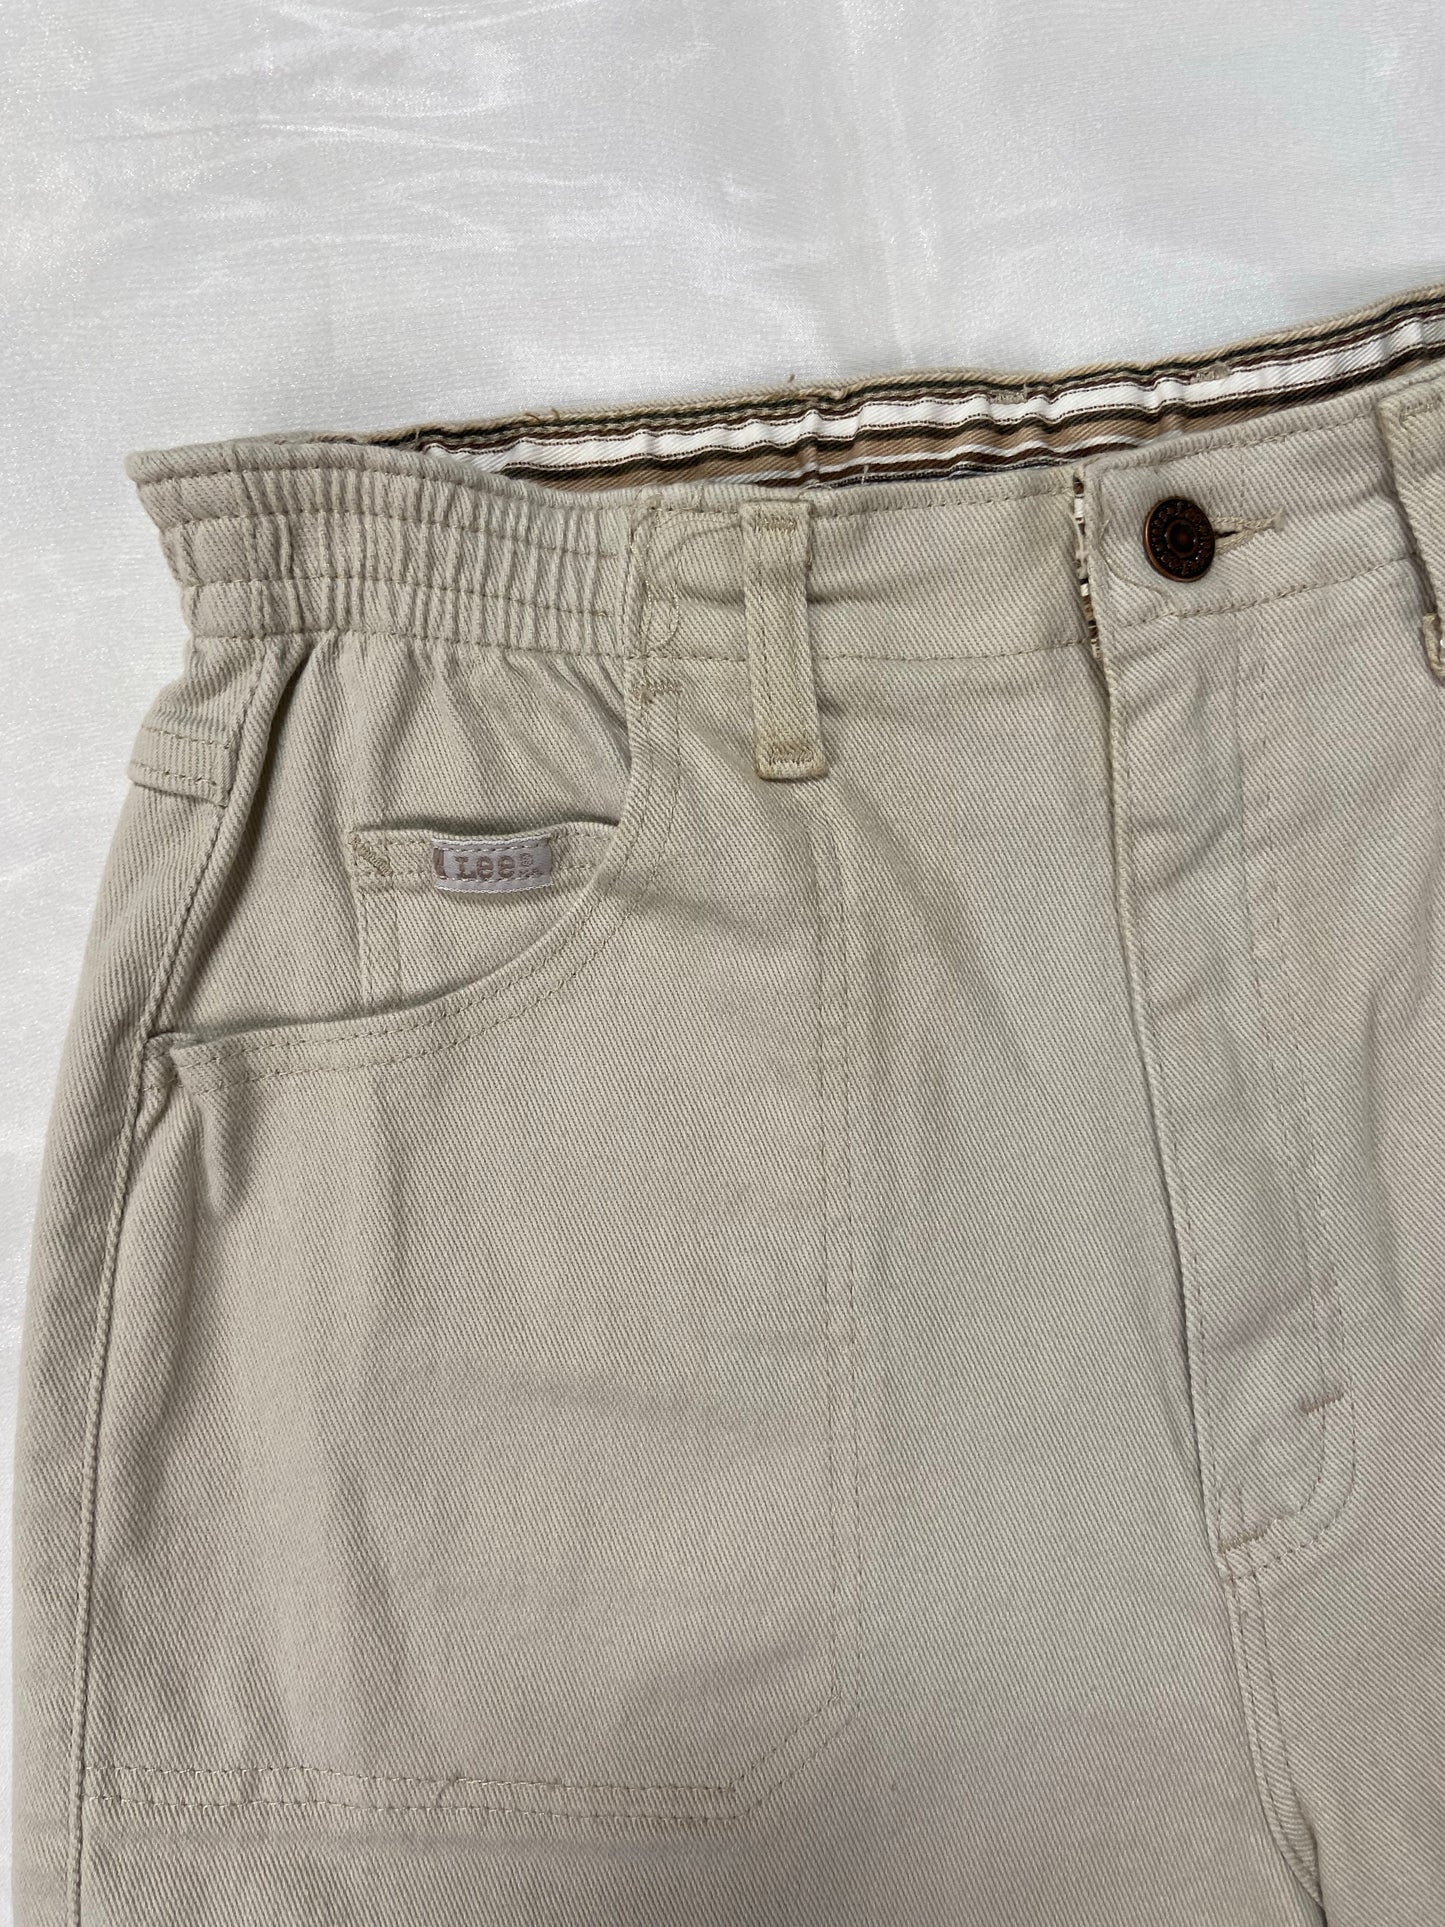 Khaki Lee Elastic Denim Shorts - 29”